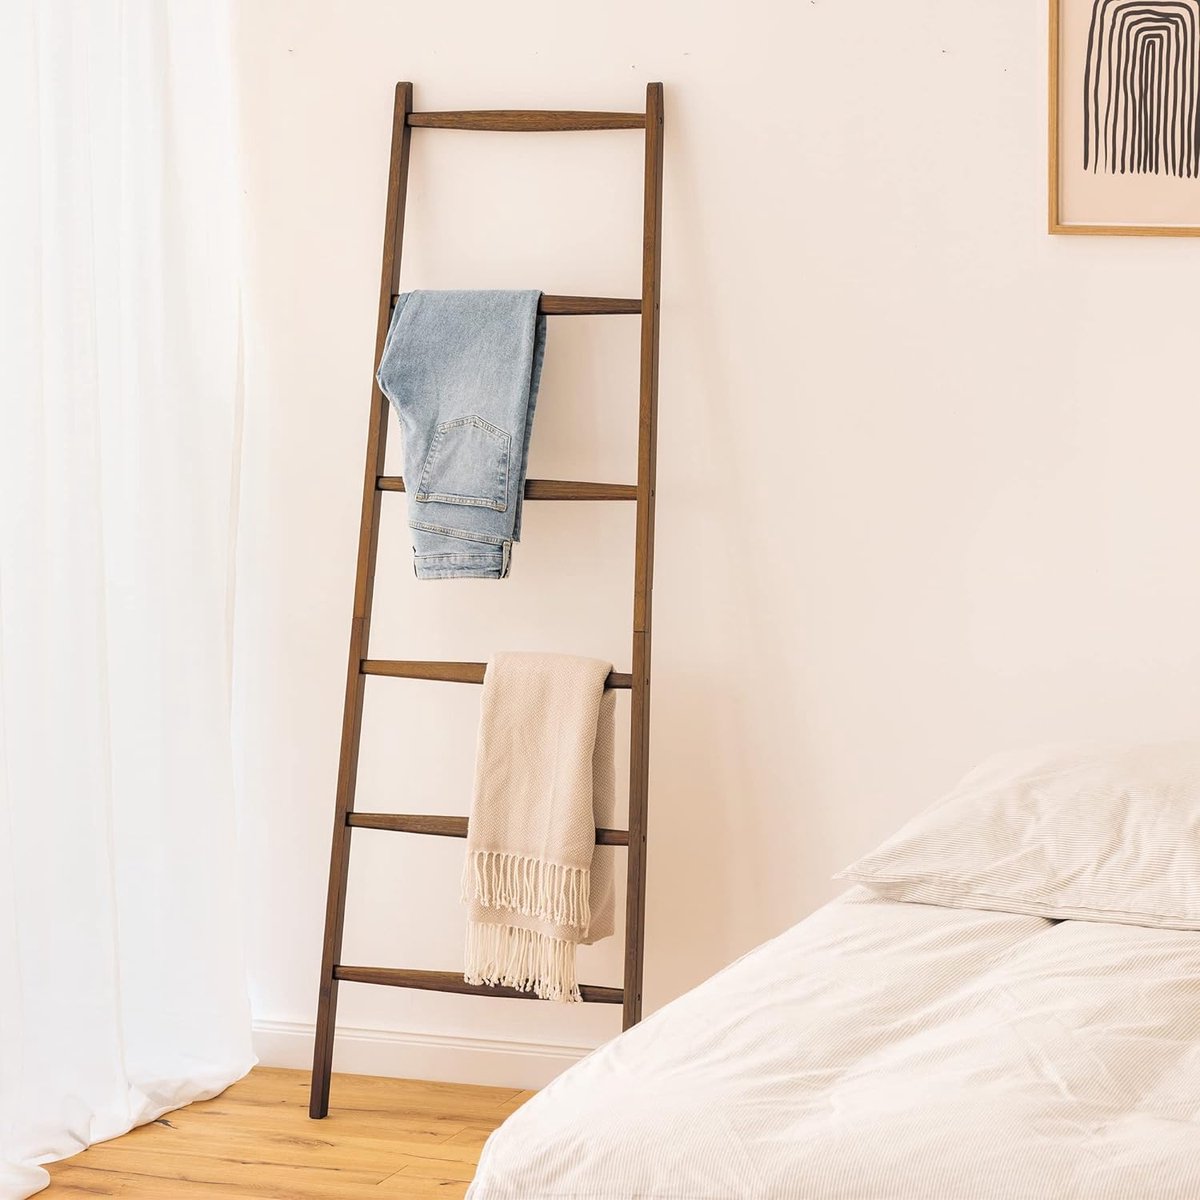 Berkatmarkt - Multifunctionele Houten Handdoeken Ladder - 6 Treden Voor Handdoeken, Kleding, Beddengoed - Voor Slaapkamer, Badkamer - Handdoek Standaard